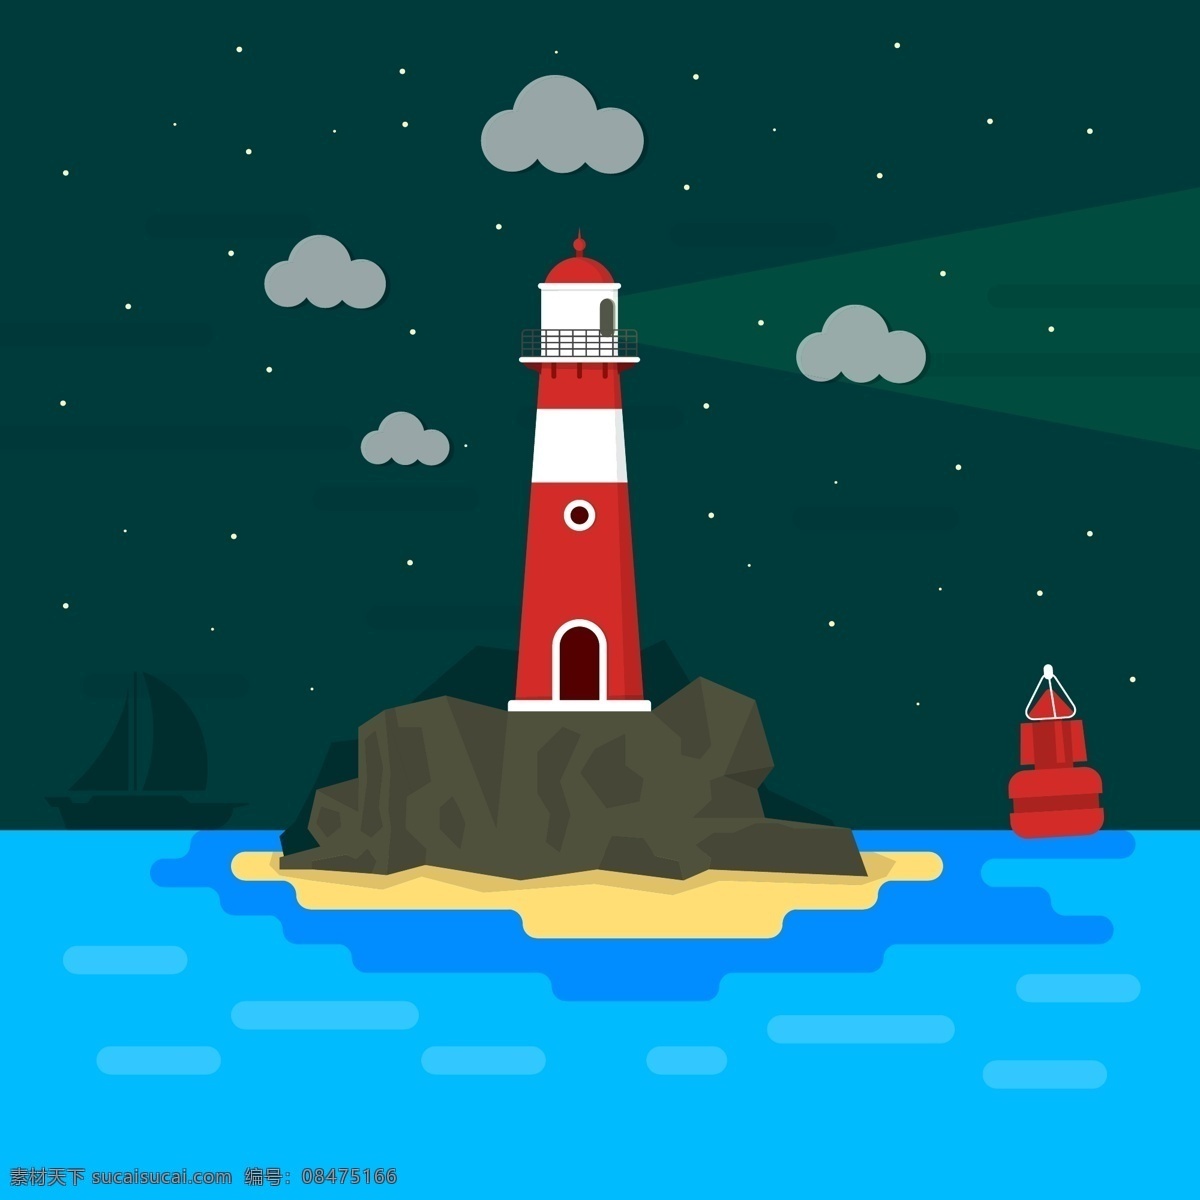 卡通 大海 中 红色 灯塔 帆船 船 云朵 海浪 夜晚 星星 礁石 航海 动漫动画 风景漫画